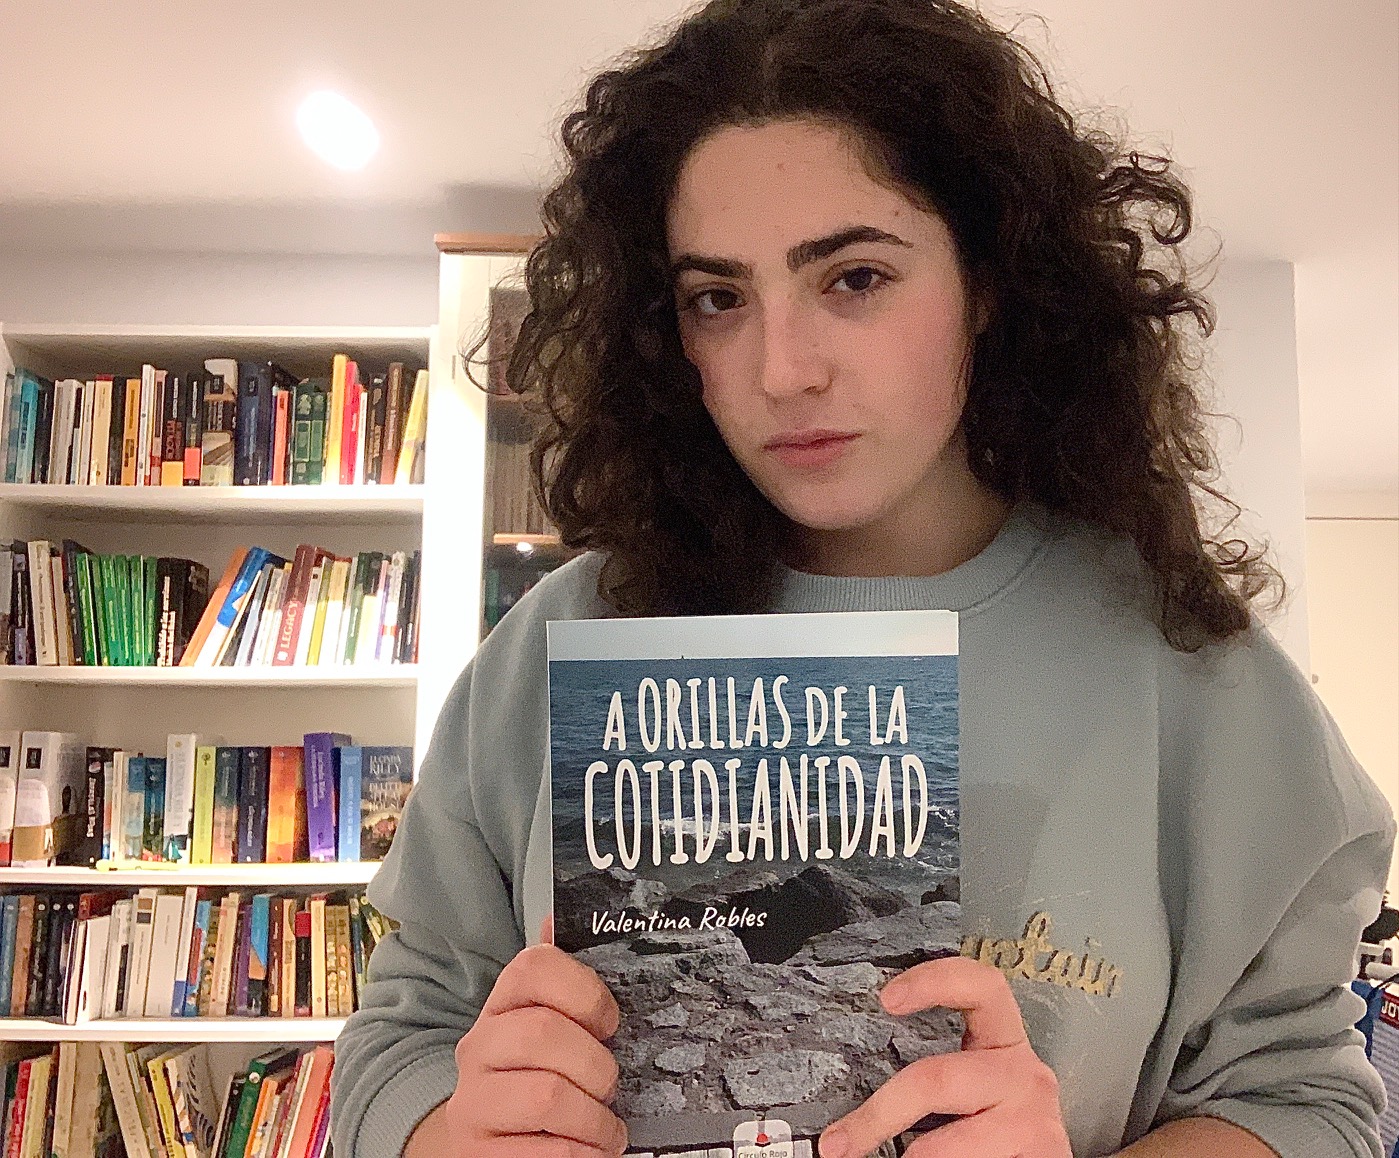 “A orillas de la cotidianidad”, tercer libro publicado de la escritora Valentina Robles